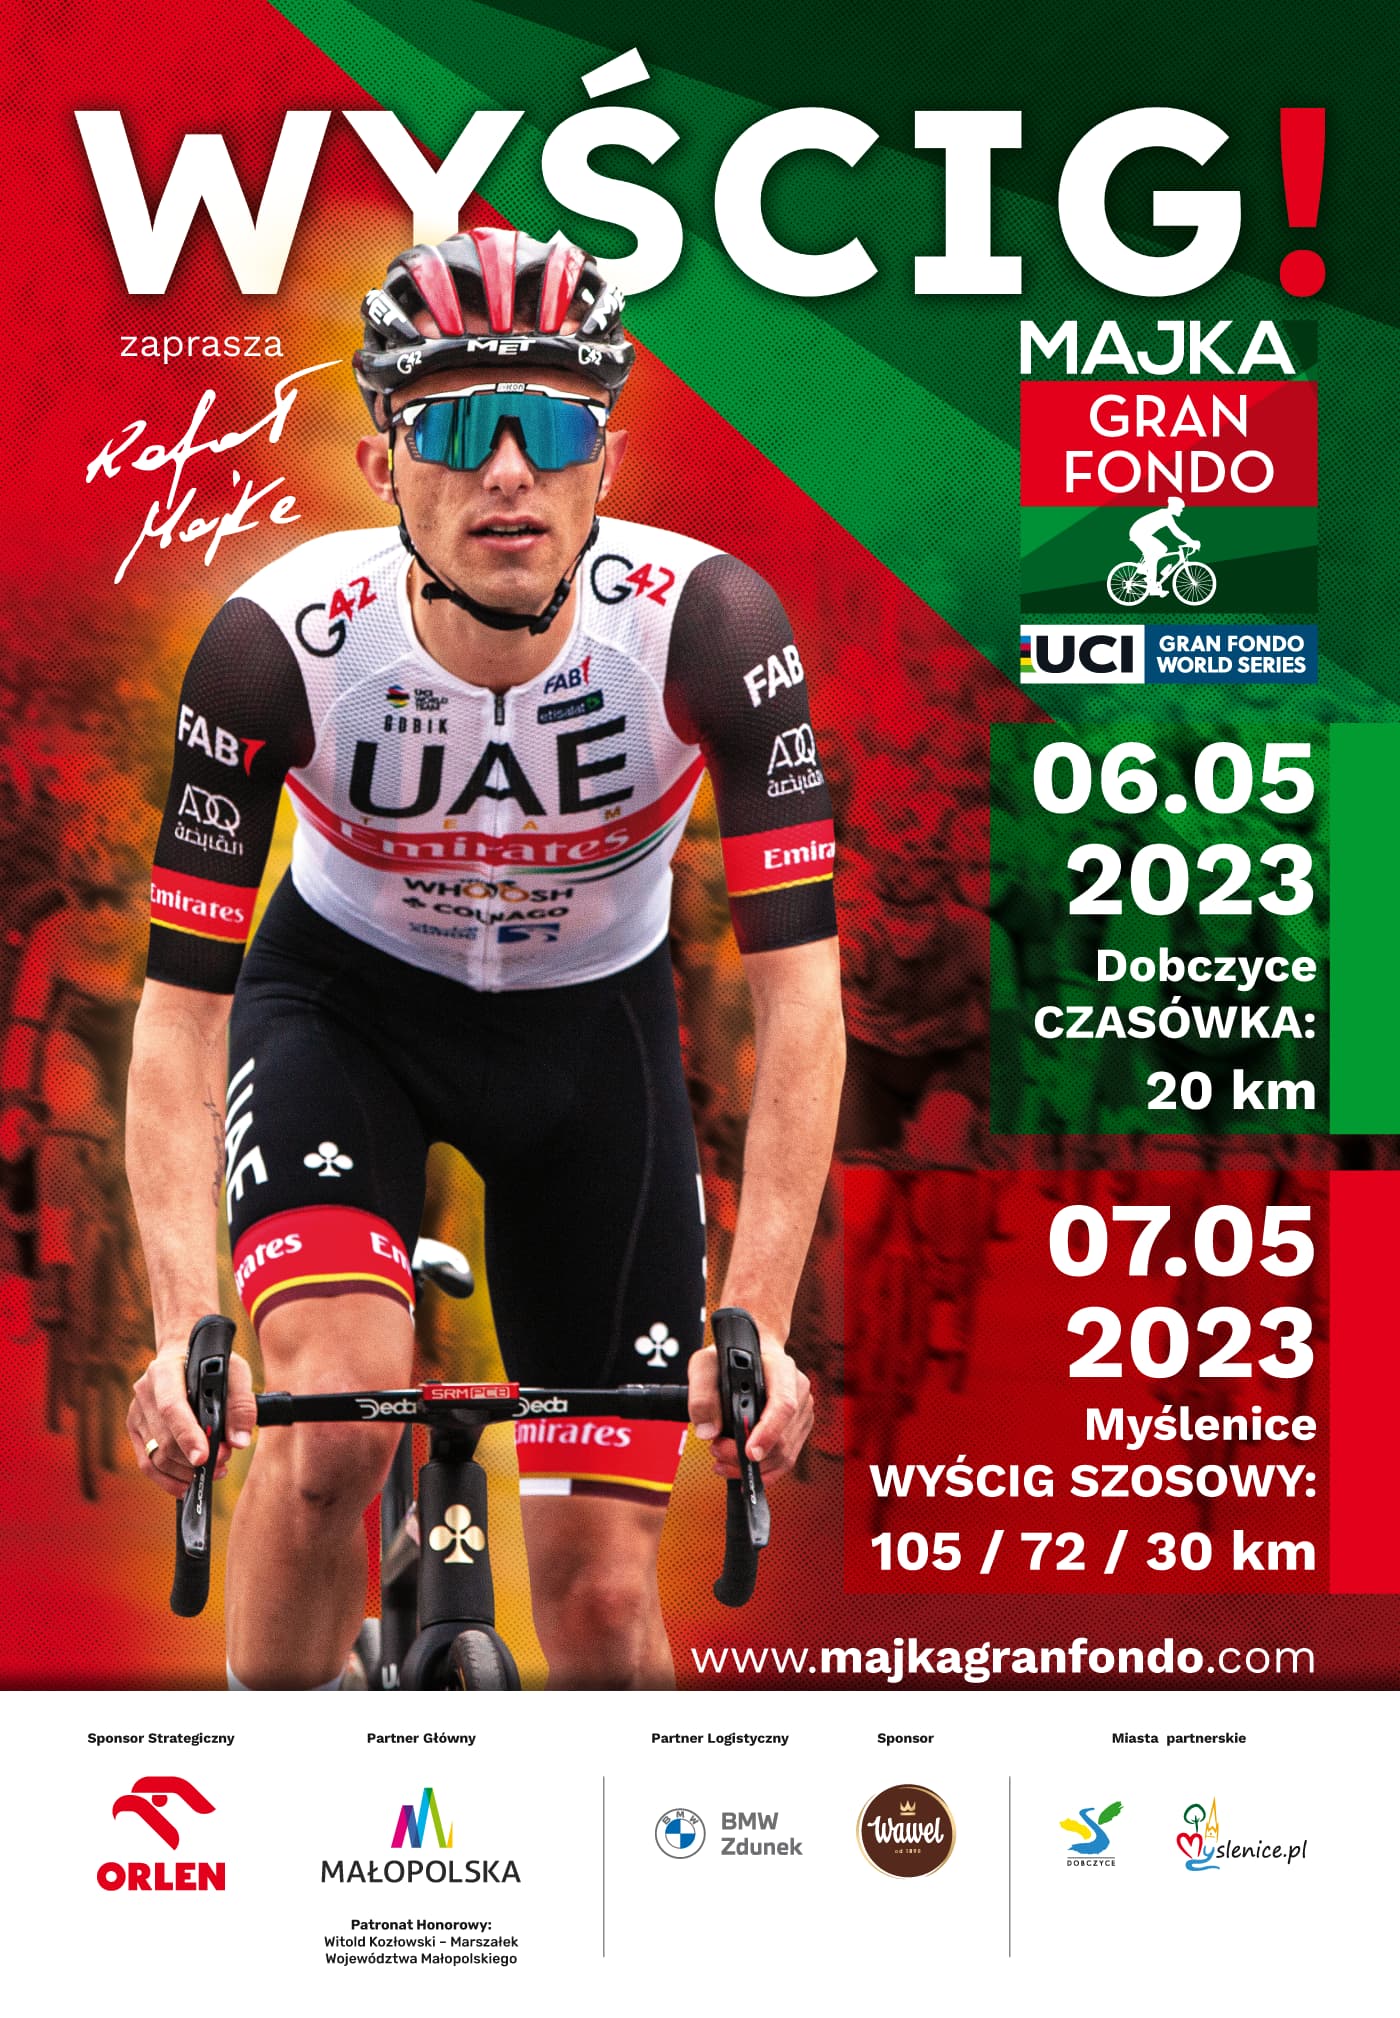 UCI GRAN FONDO – jedyna taka impreza kolarska w Polsce